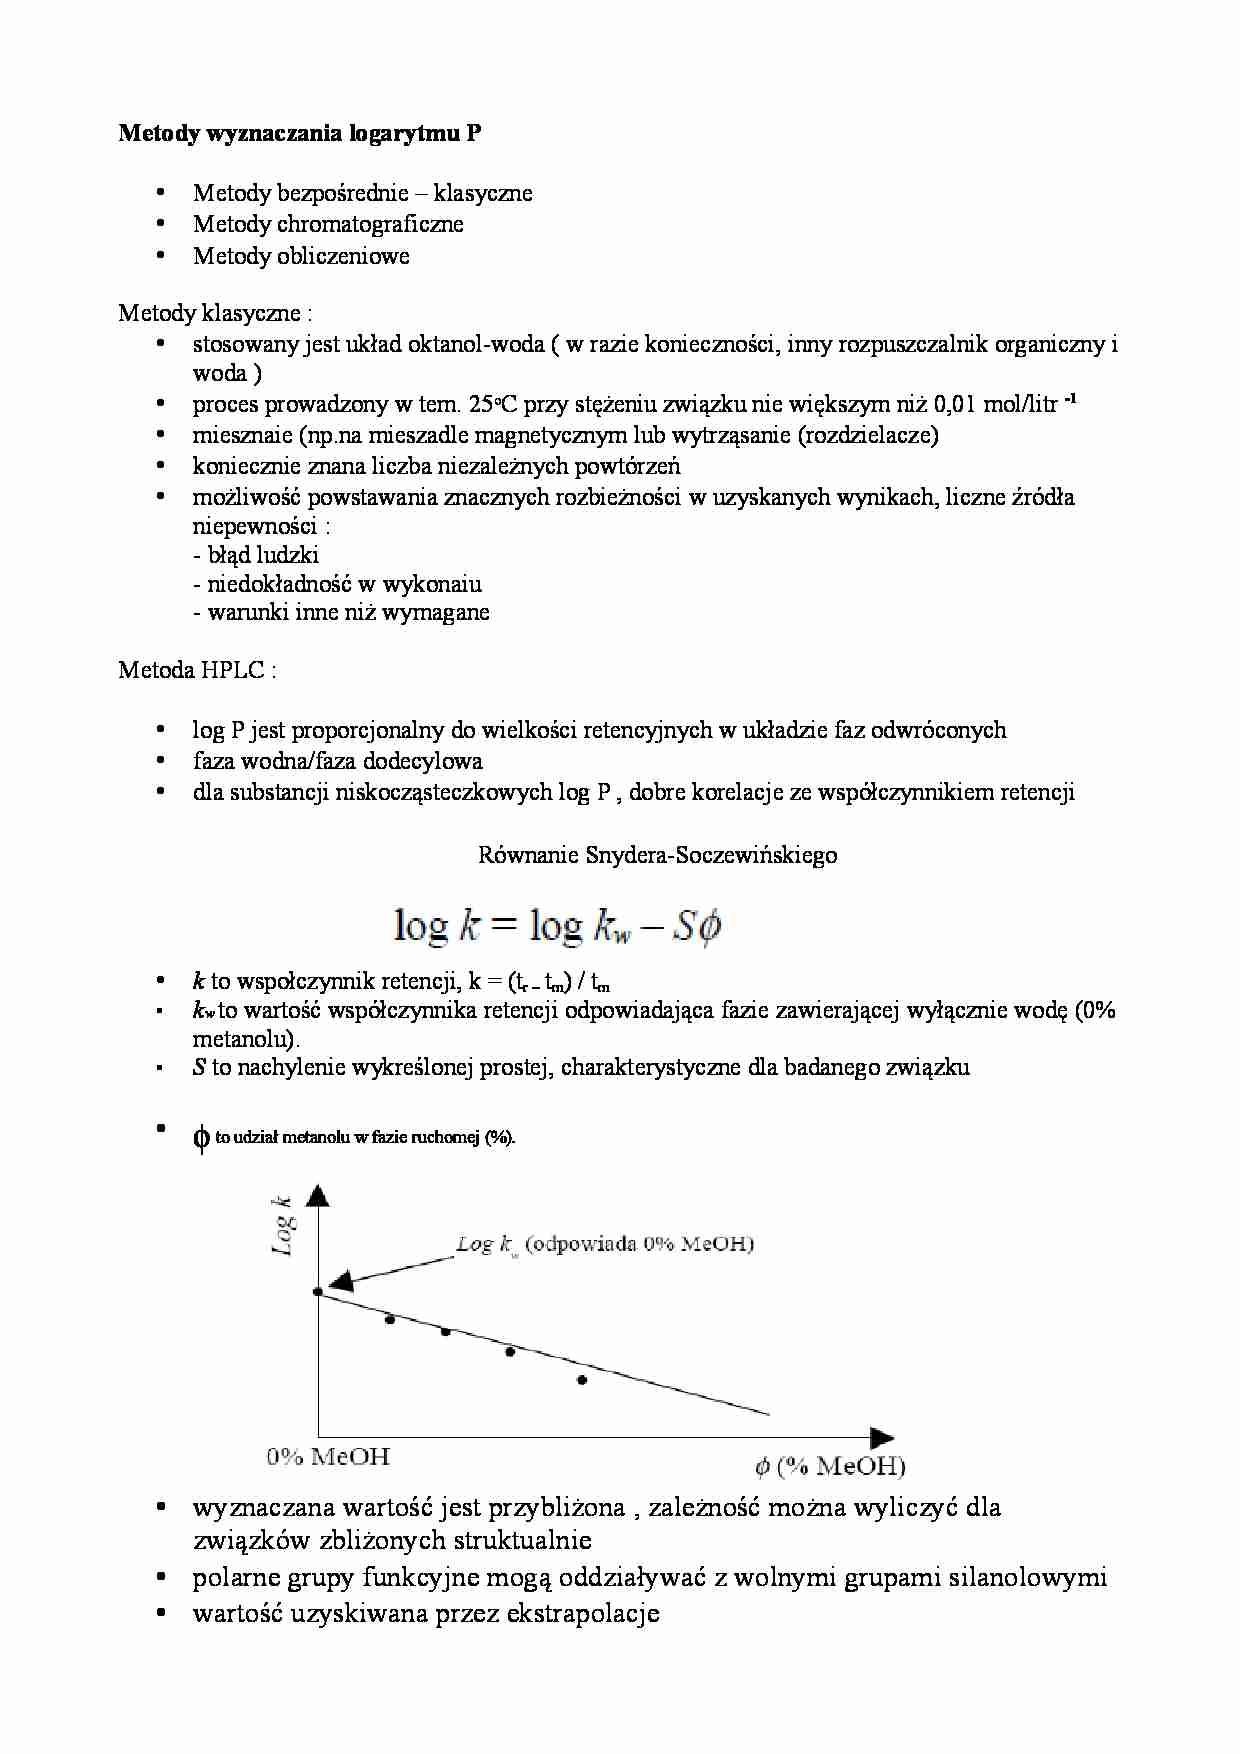 Metody wyznaczania logarytmu P - strona 1